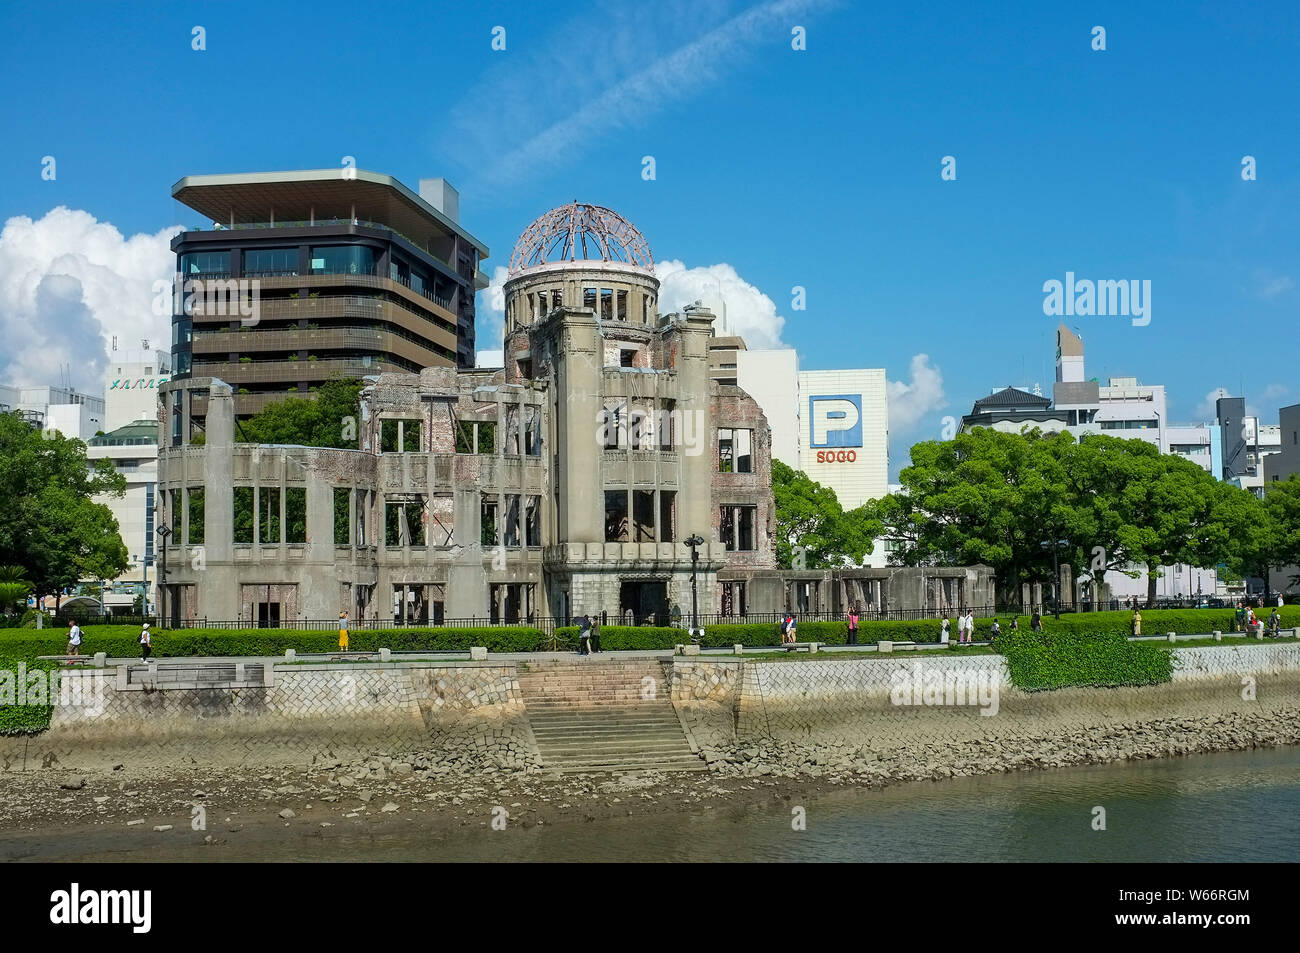 La Cupola della Bomba atomica dove a 8:15am il 6 agosto 1945, la prima bomba atomica nella storia umana è stata gocciolata su Hiroshima, Giappone. Foto Stock